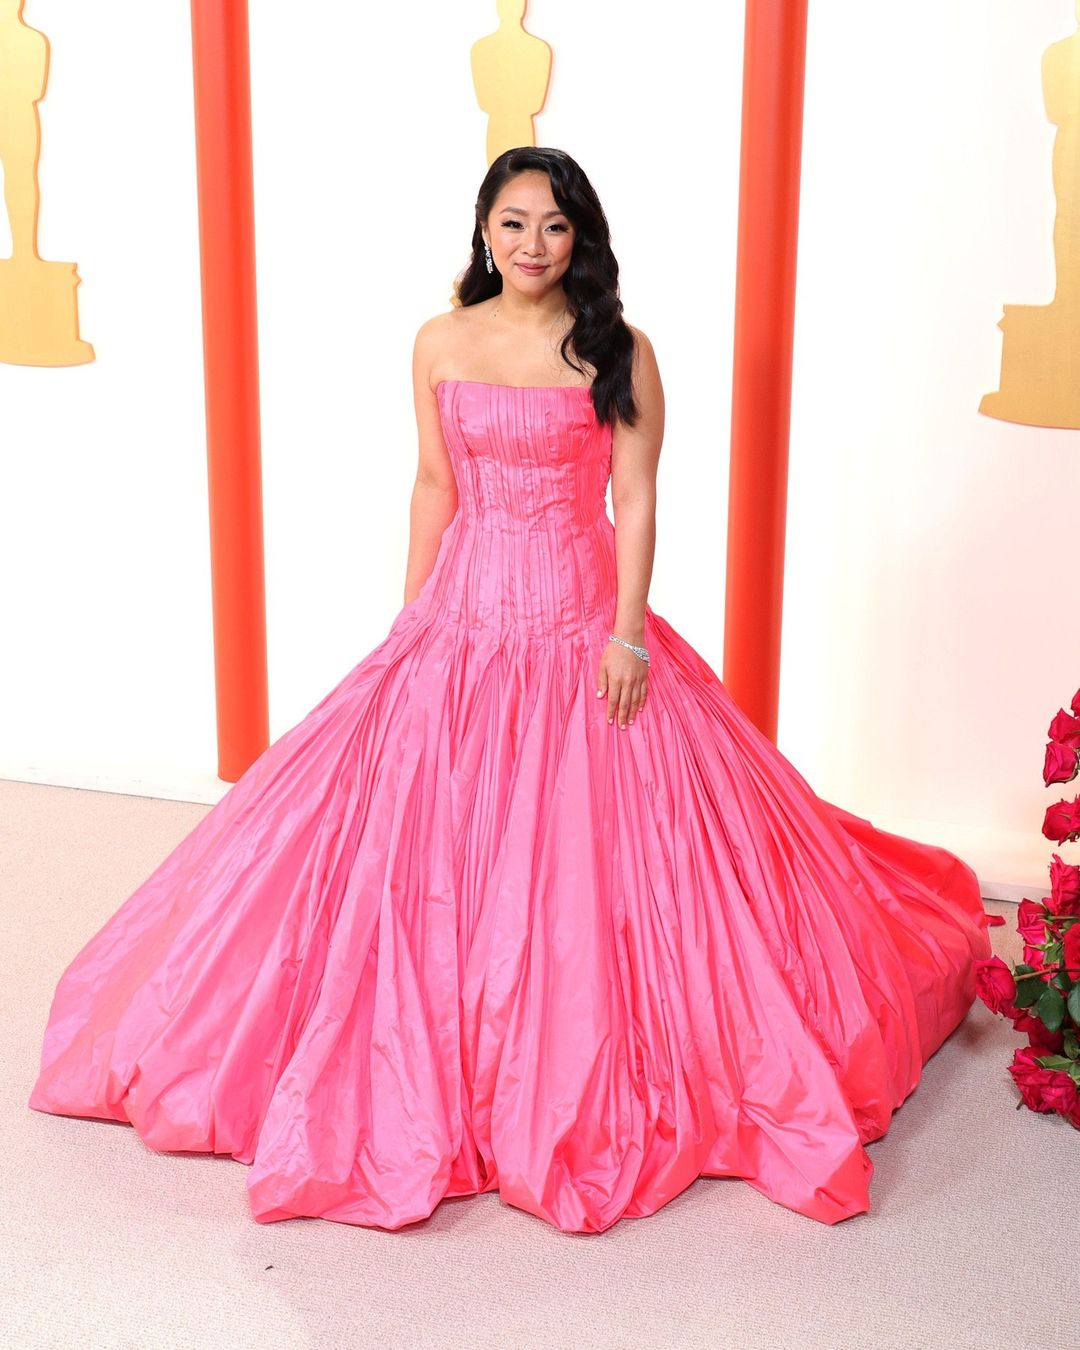 PHOTOS: Cute Prom Dress Ideas, As Seen At The Oscars 2023